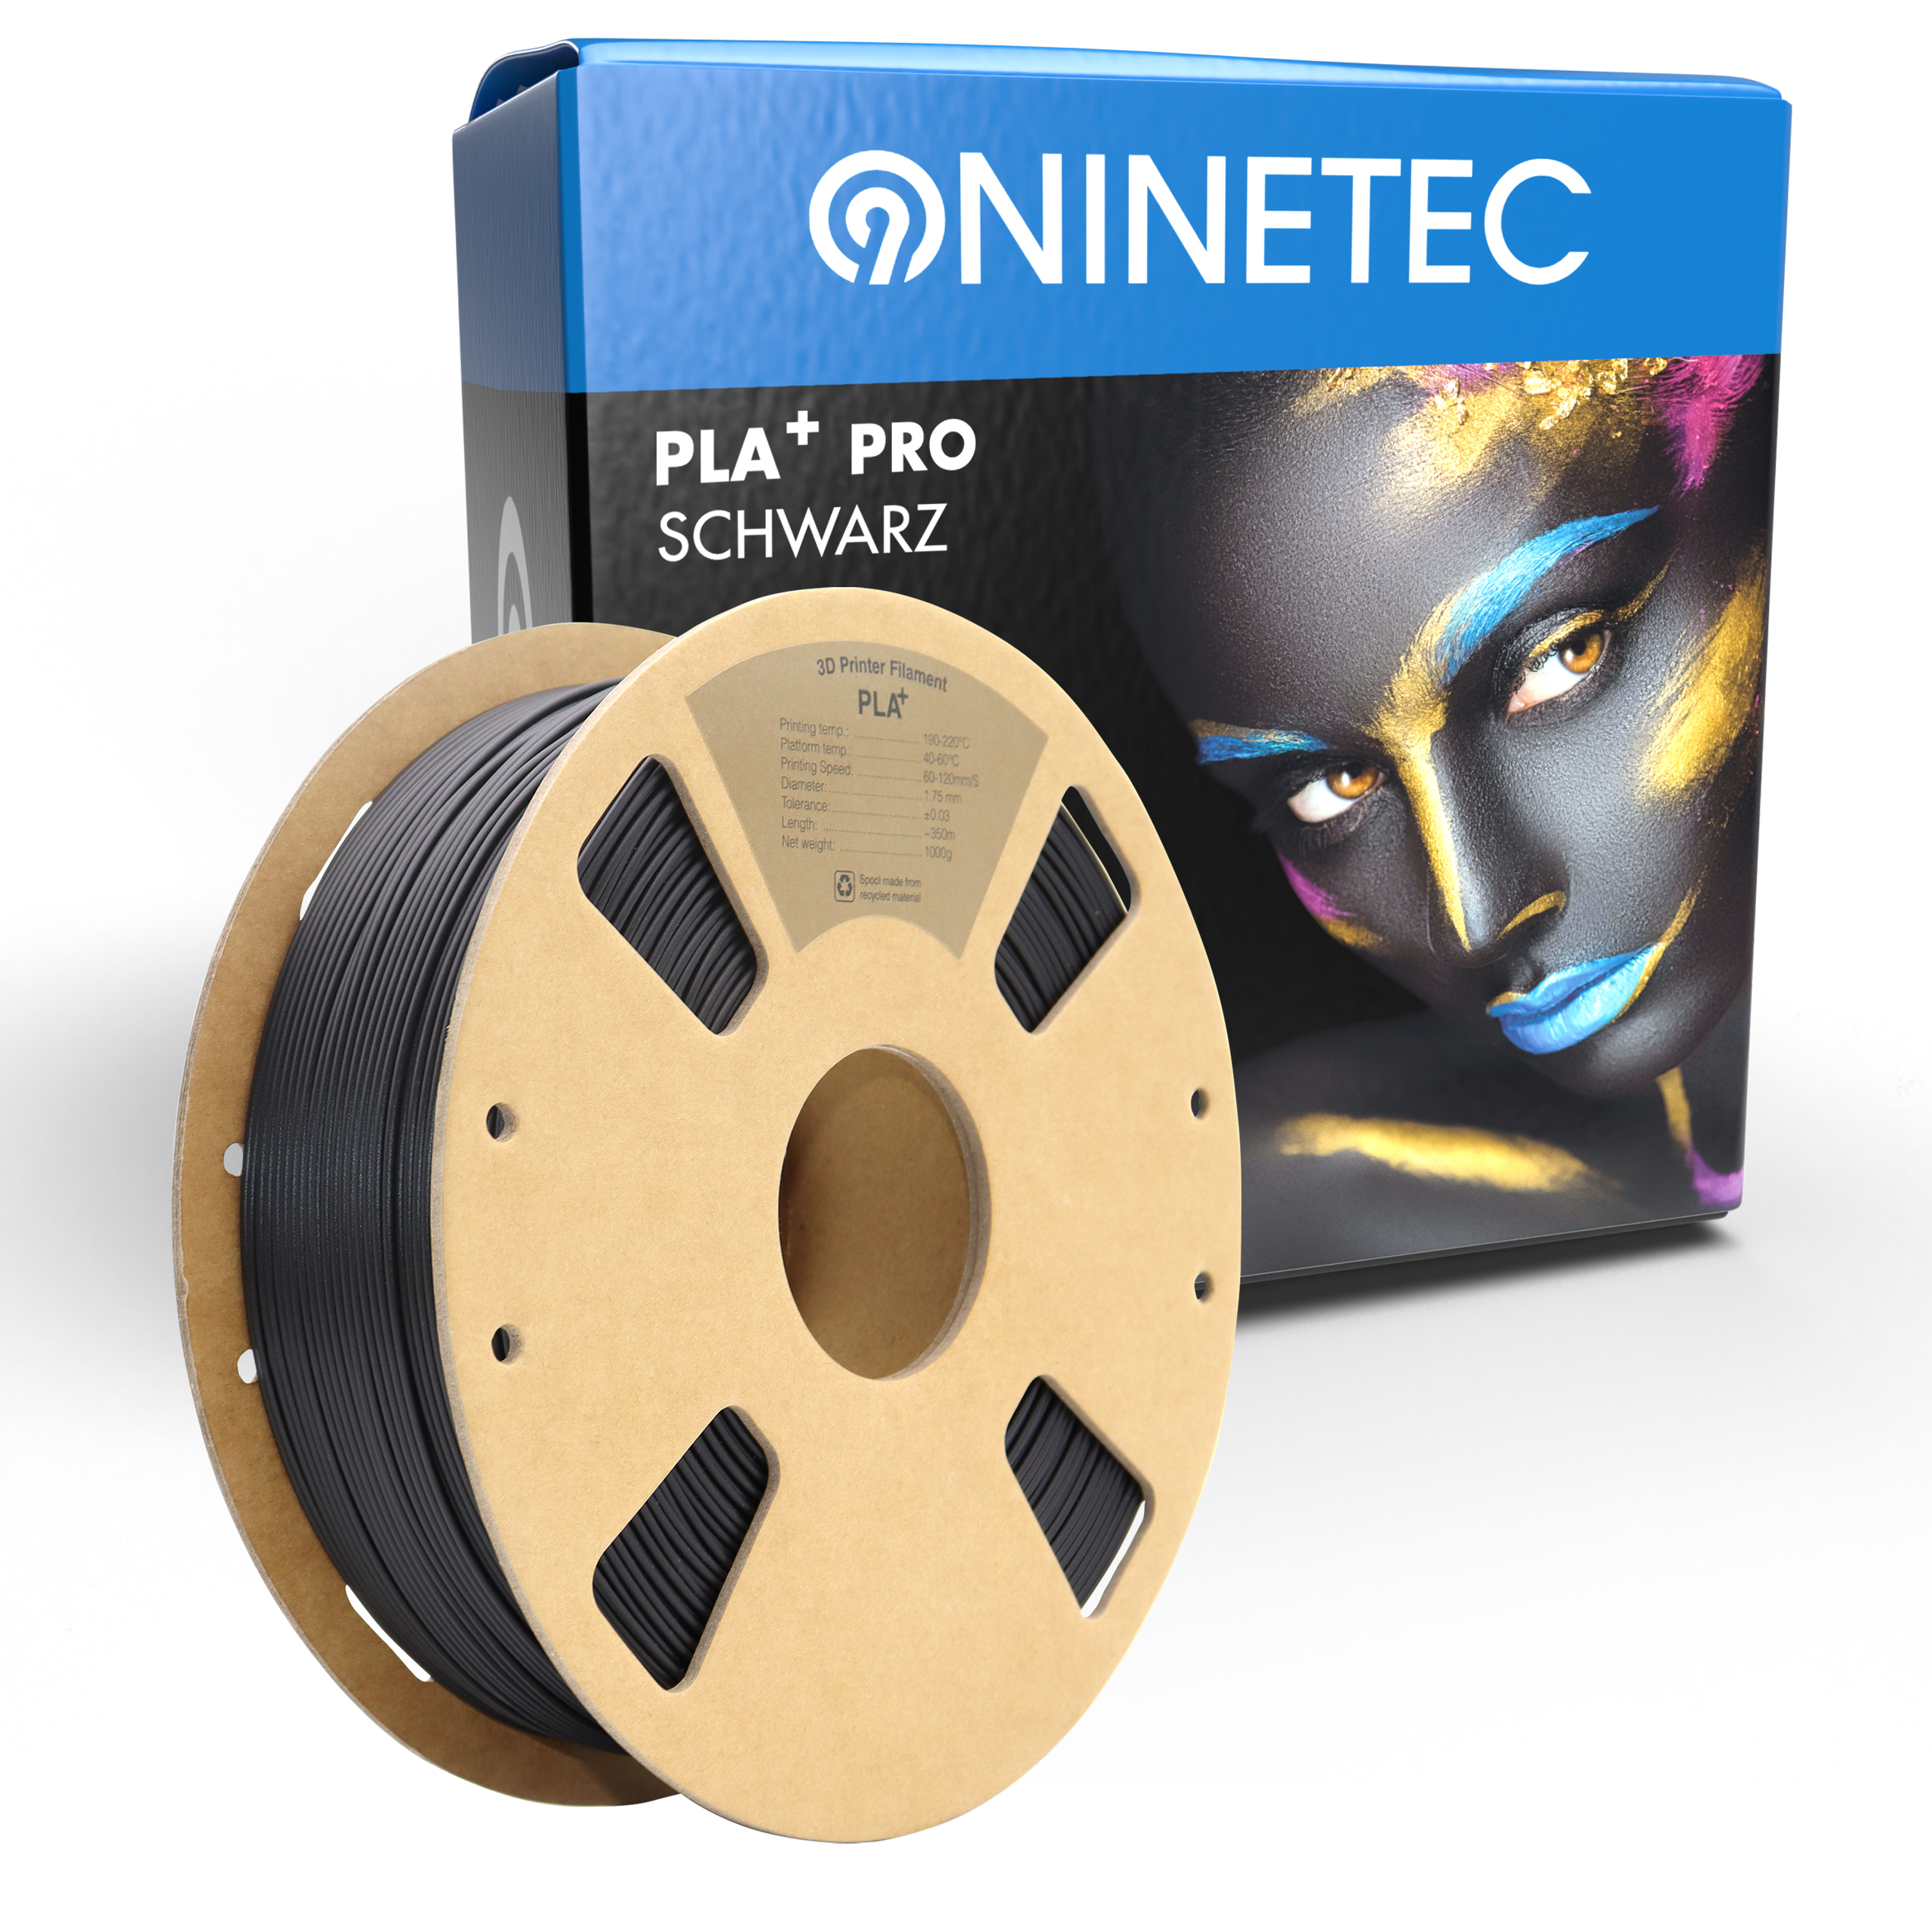 Filament schwarz PLA+ PRO NINETEC